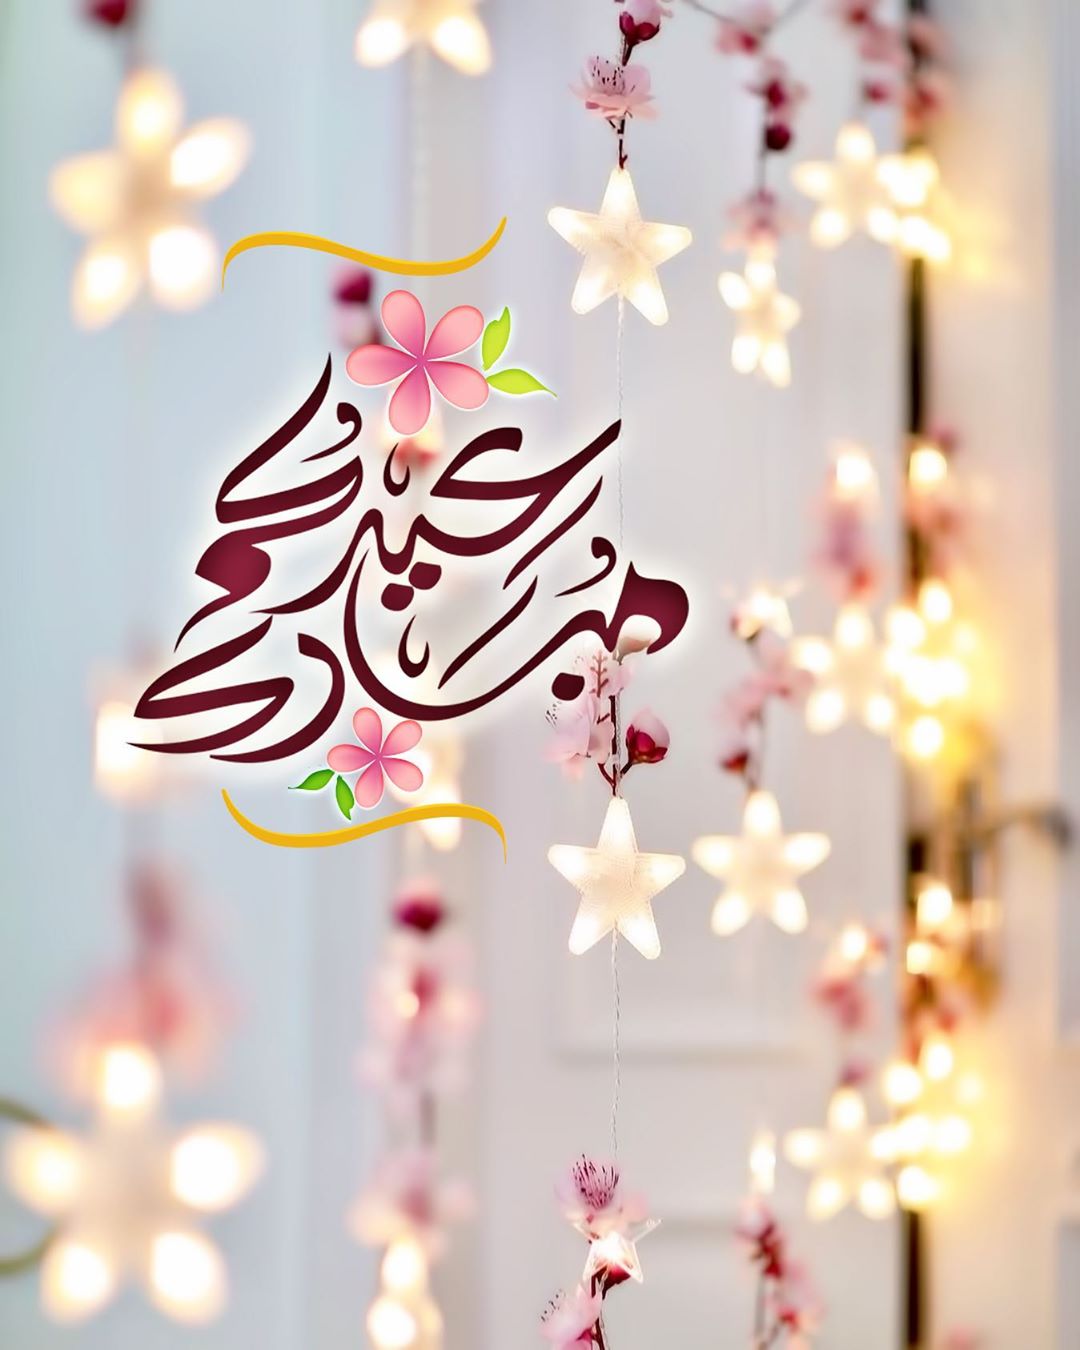 صور عيد الفطر 2020 وبطاقات تهنئة بالعيد أجمل المعايدات للأحباب والأصدقاء